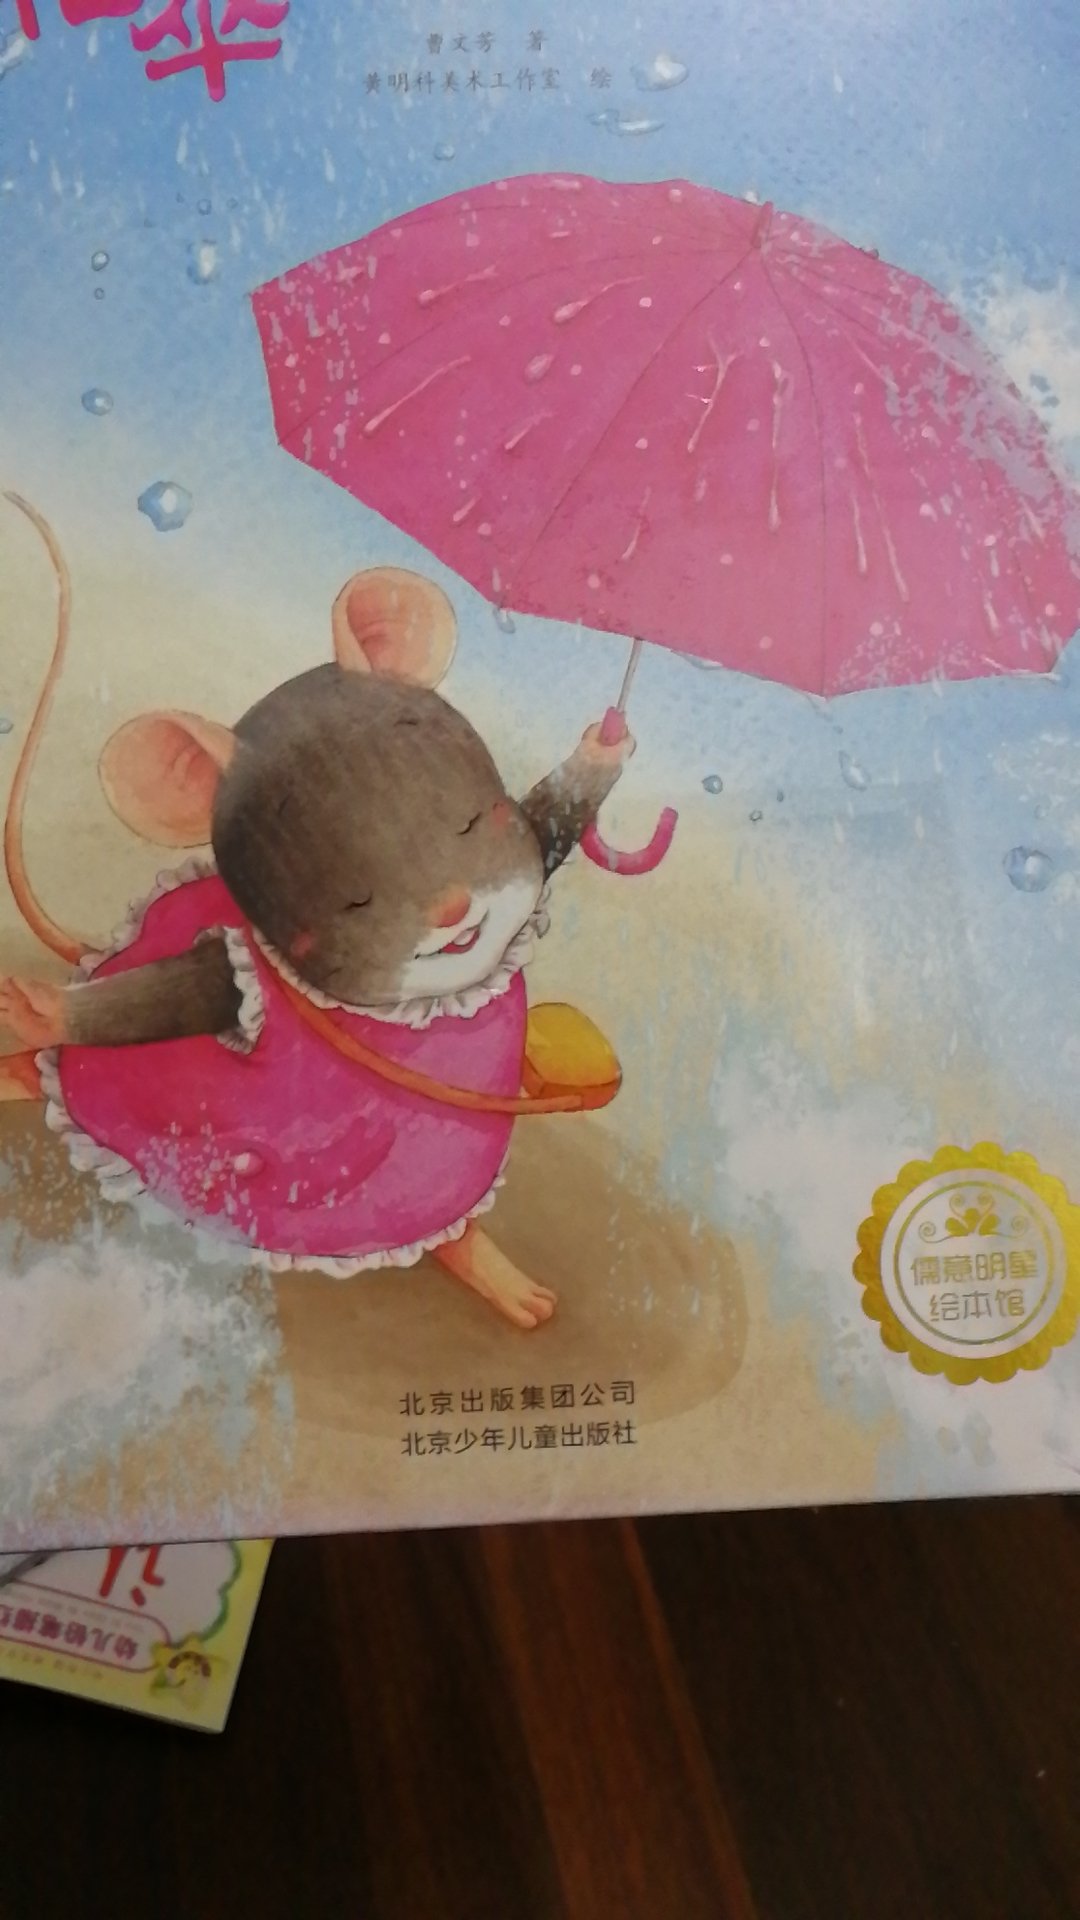 花伞里的小小鼠感觉比其它几本书籍内容精彩多了。